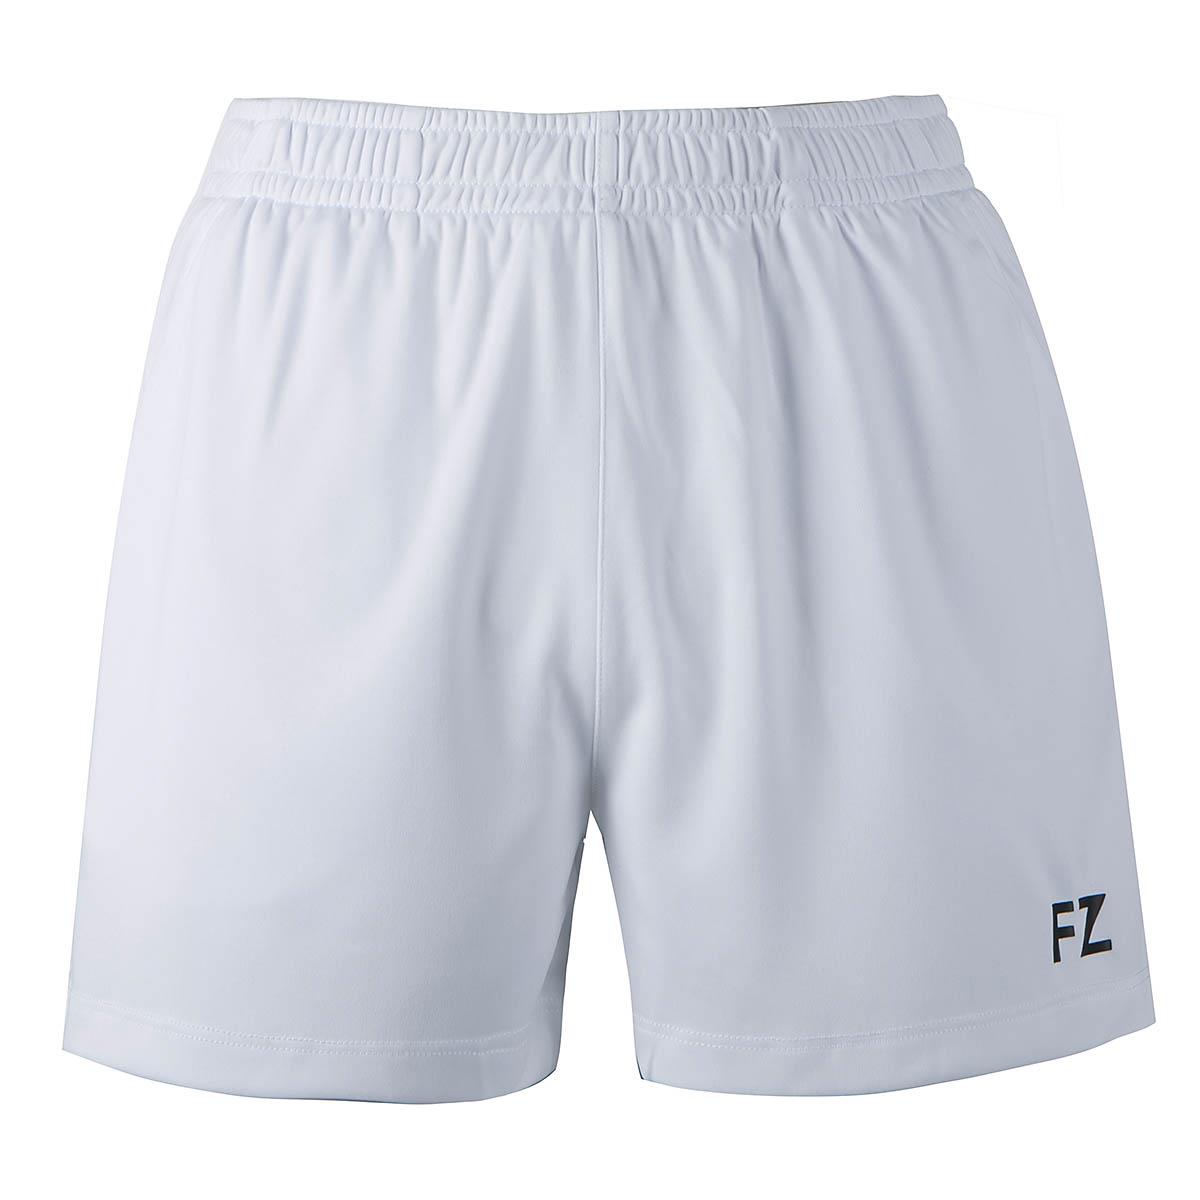 FZ Forza Laika 2 in 1 Womens Badminton Shorts - White